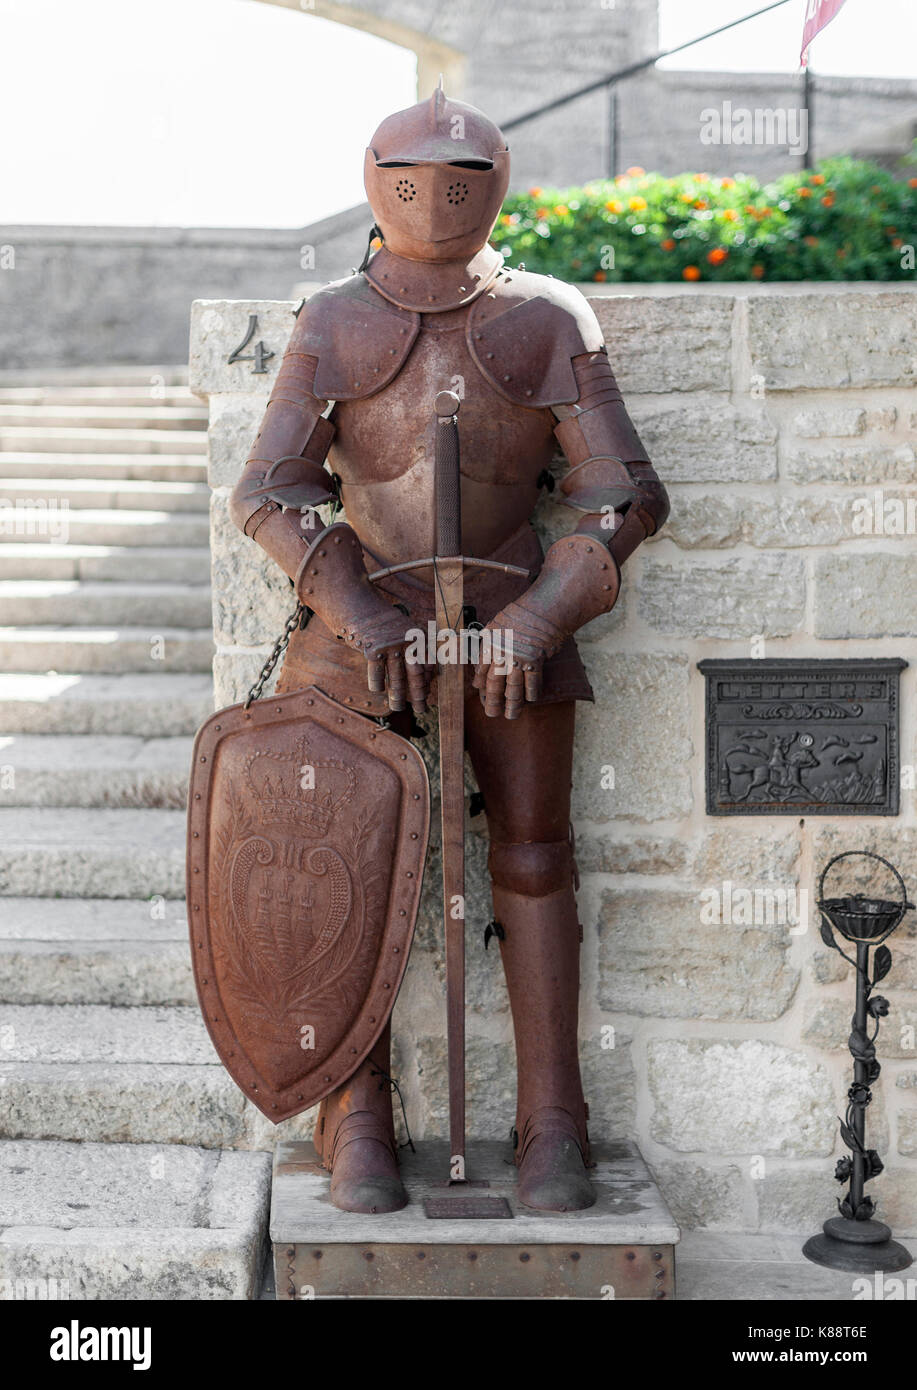 Medieval armatura sul display nel centro storico della città di San Marino. Foto Stock